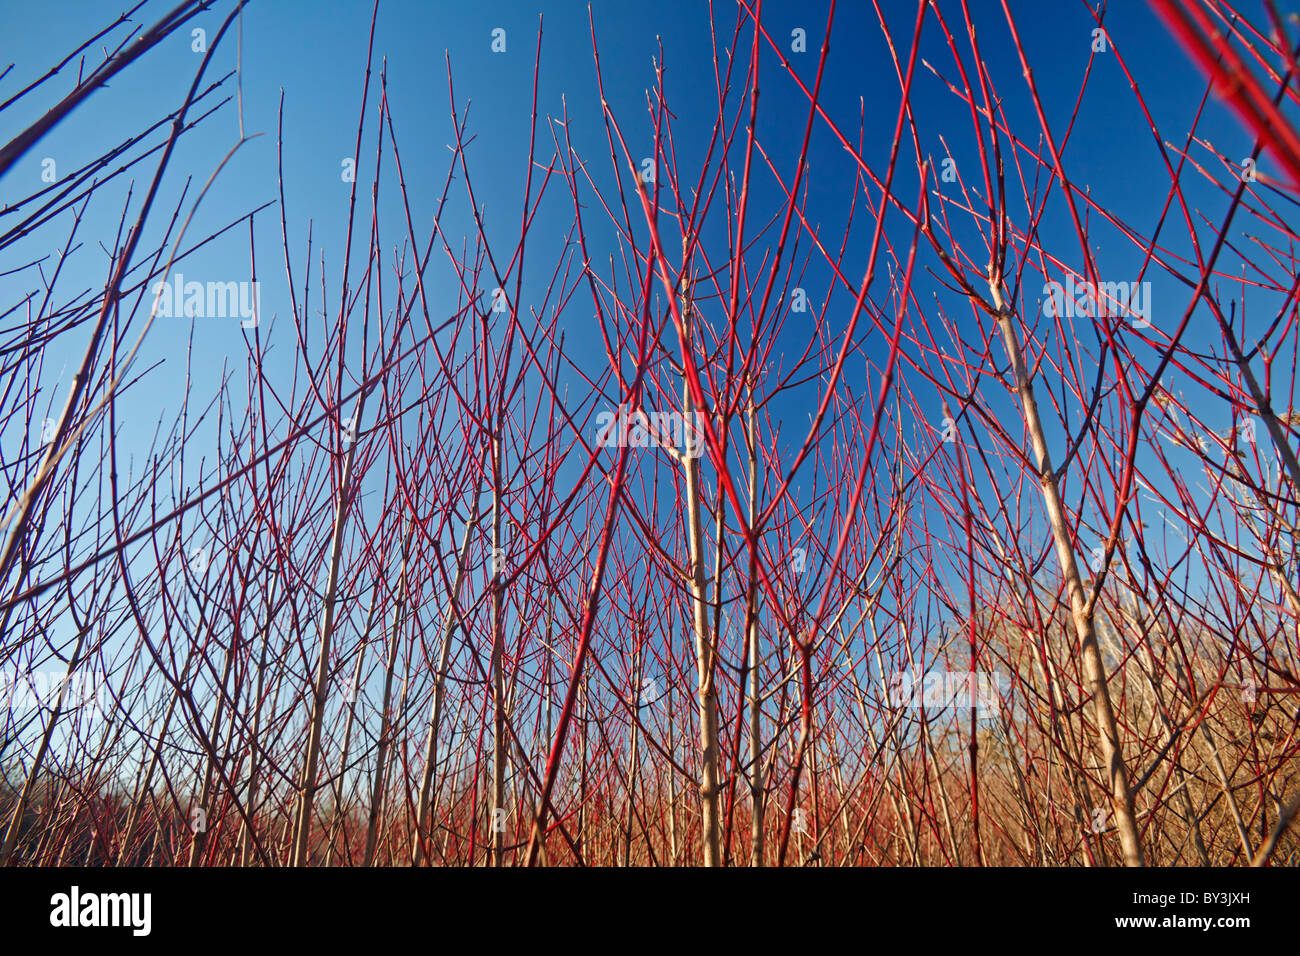 Gemeinsamen Hartriegel-((Cornus sanguinea), im Winter (Allier - Frankreich). Cornouillers Sanguins, En Hiver (Allier 03 - Frankreich). Stockfoto